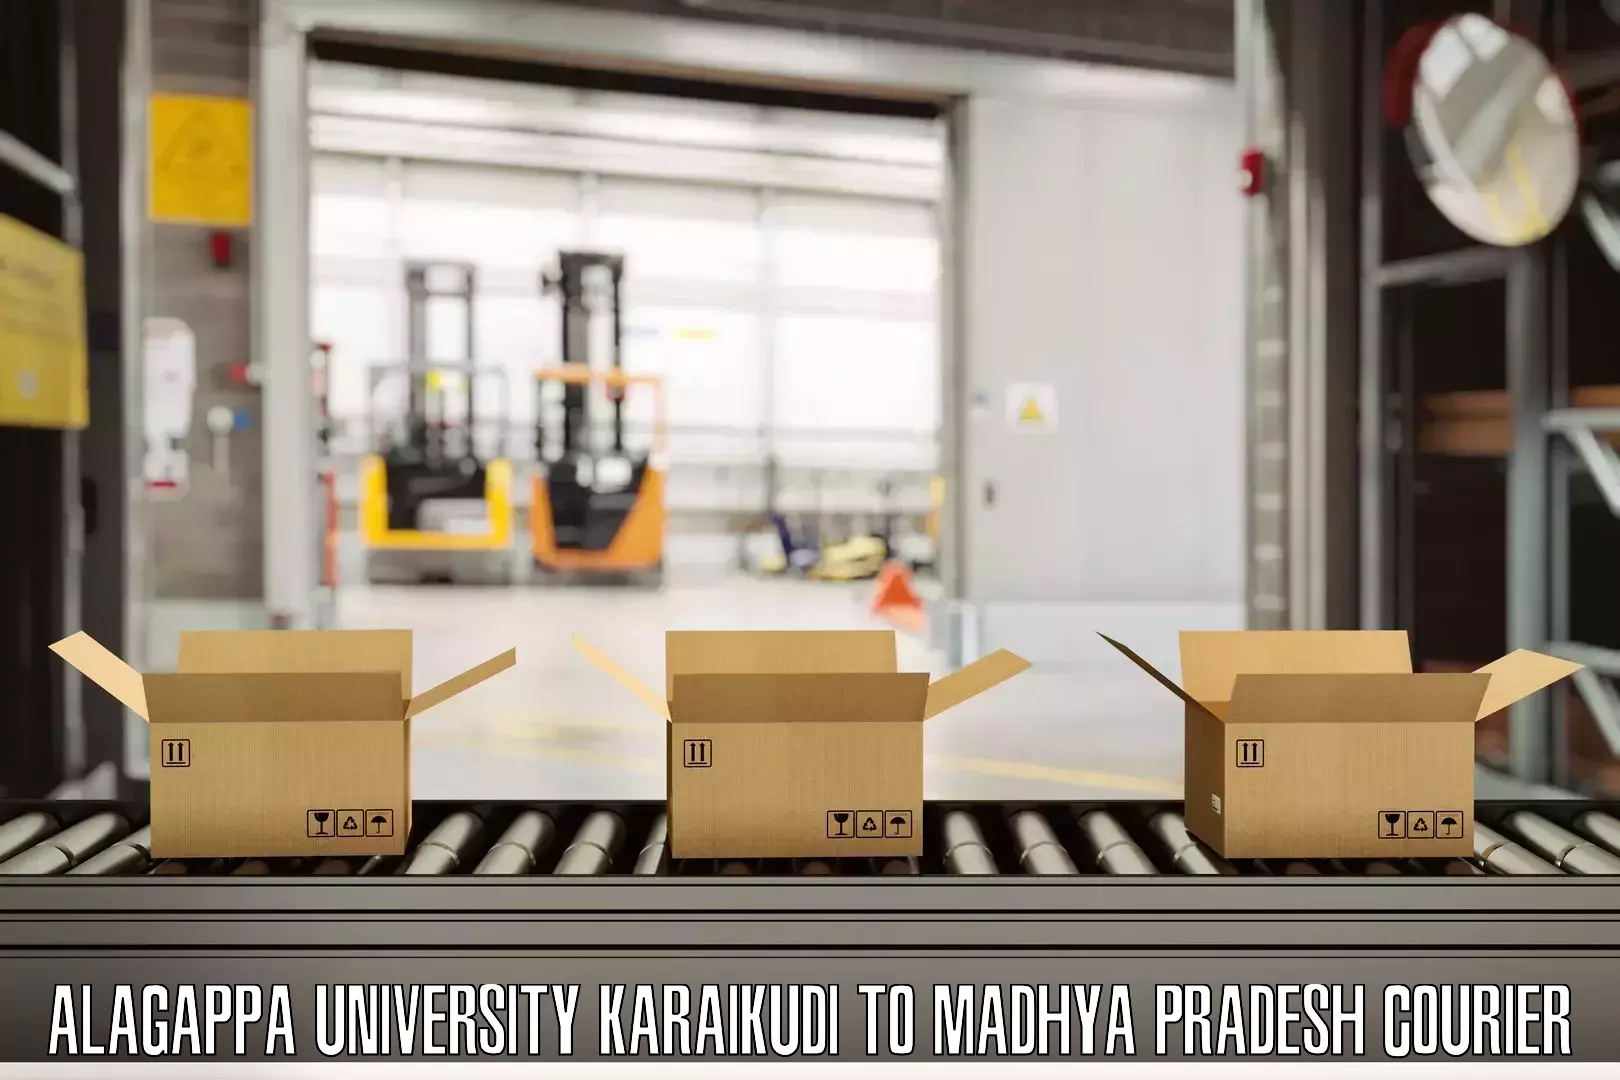 Baggage delivery scheduling Alagappa University Karaikudi to Ashoknagar